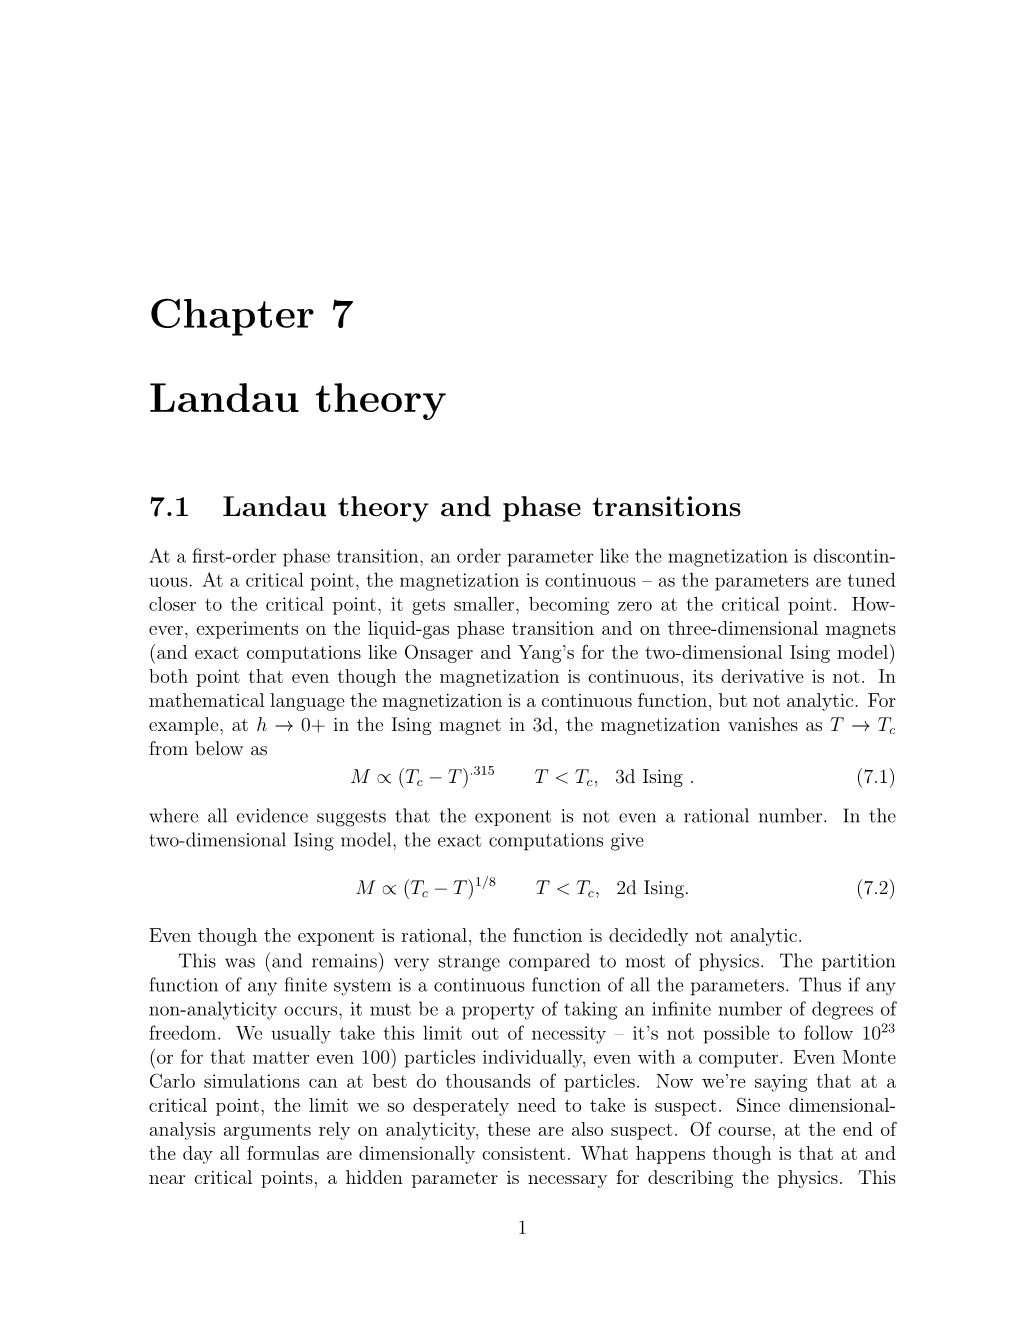 Chapter 7 Landau Theory